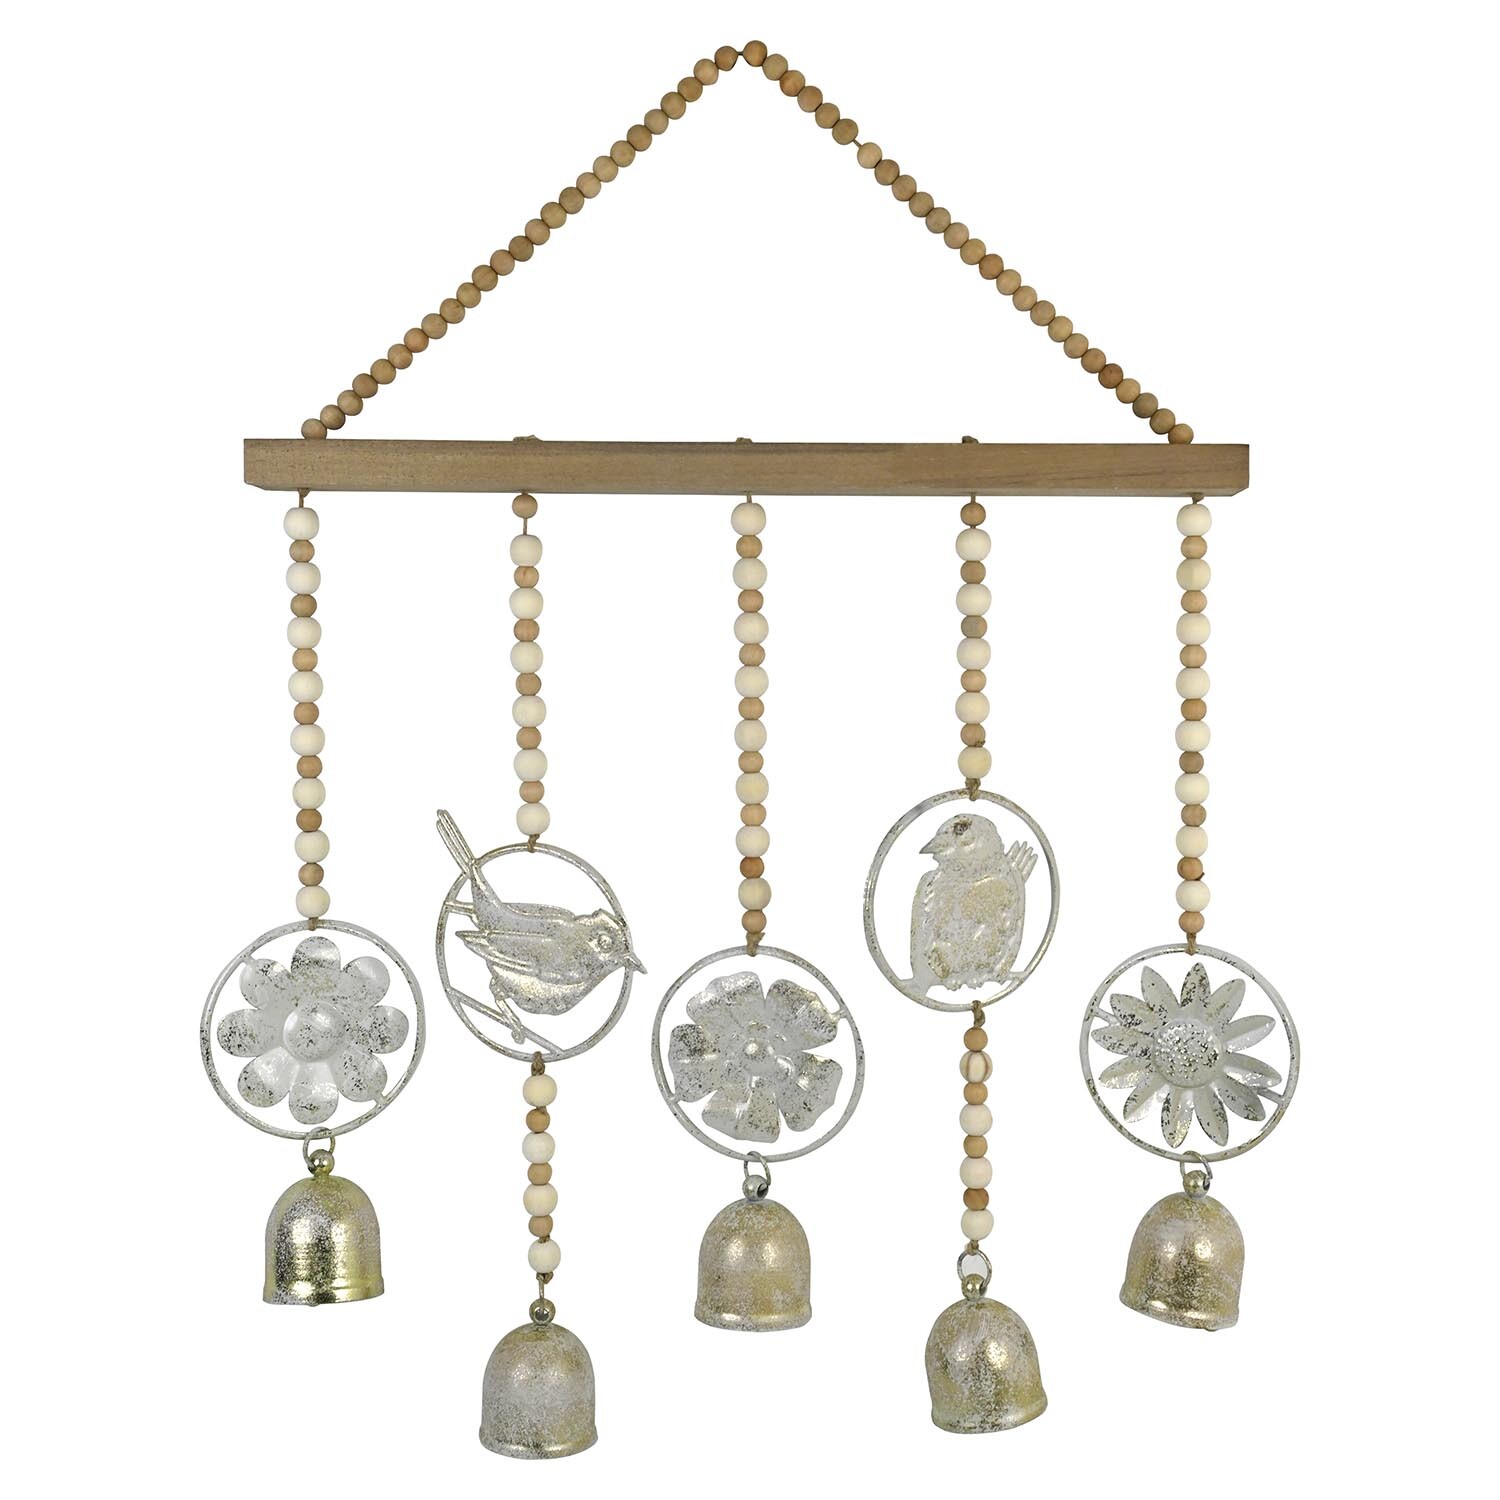 Vintage Effect Beaded Hanging Bells - Natural Image 1